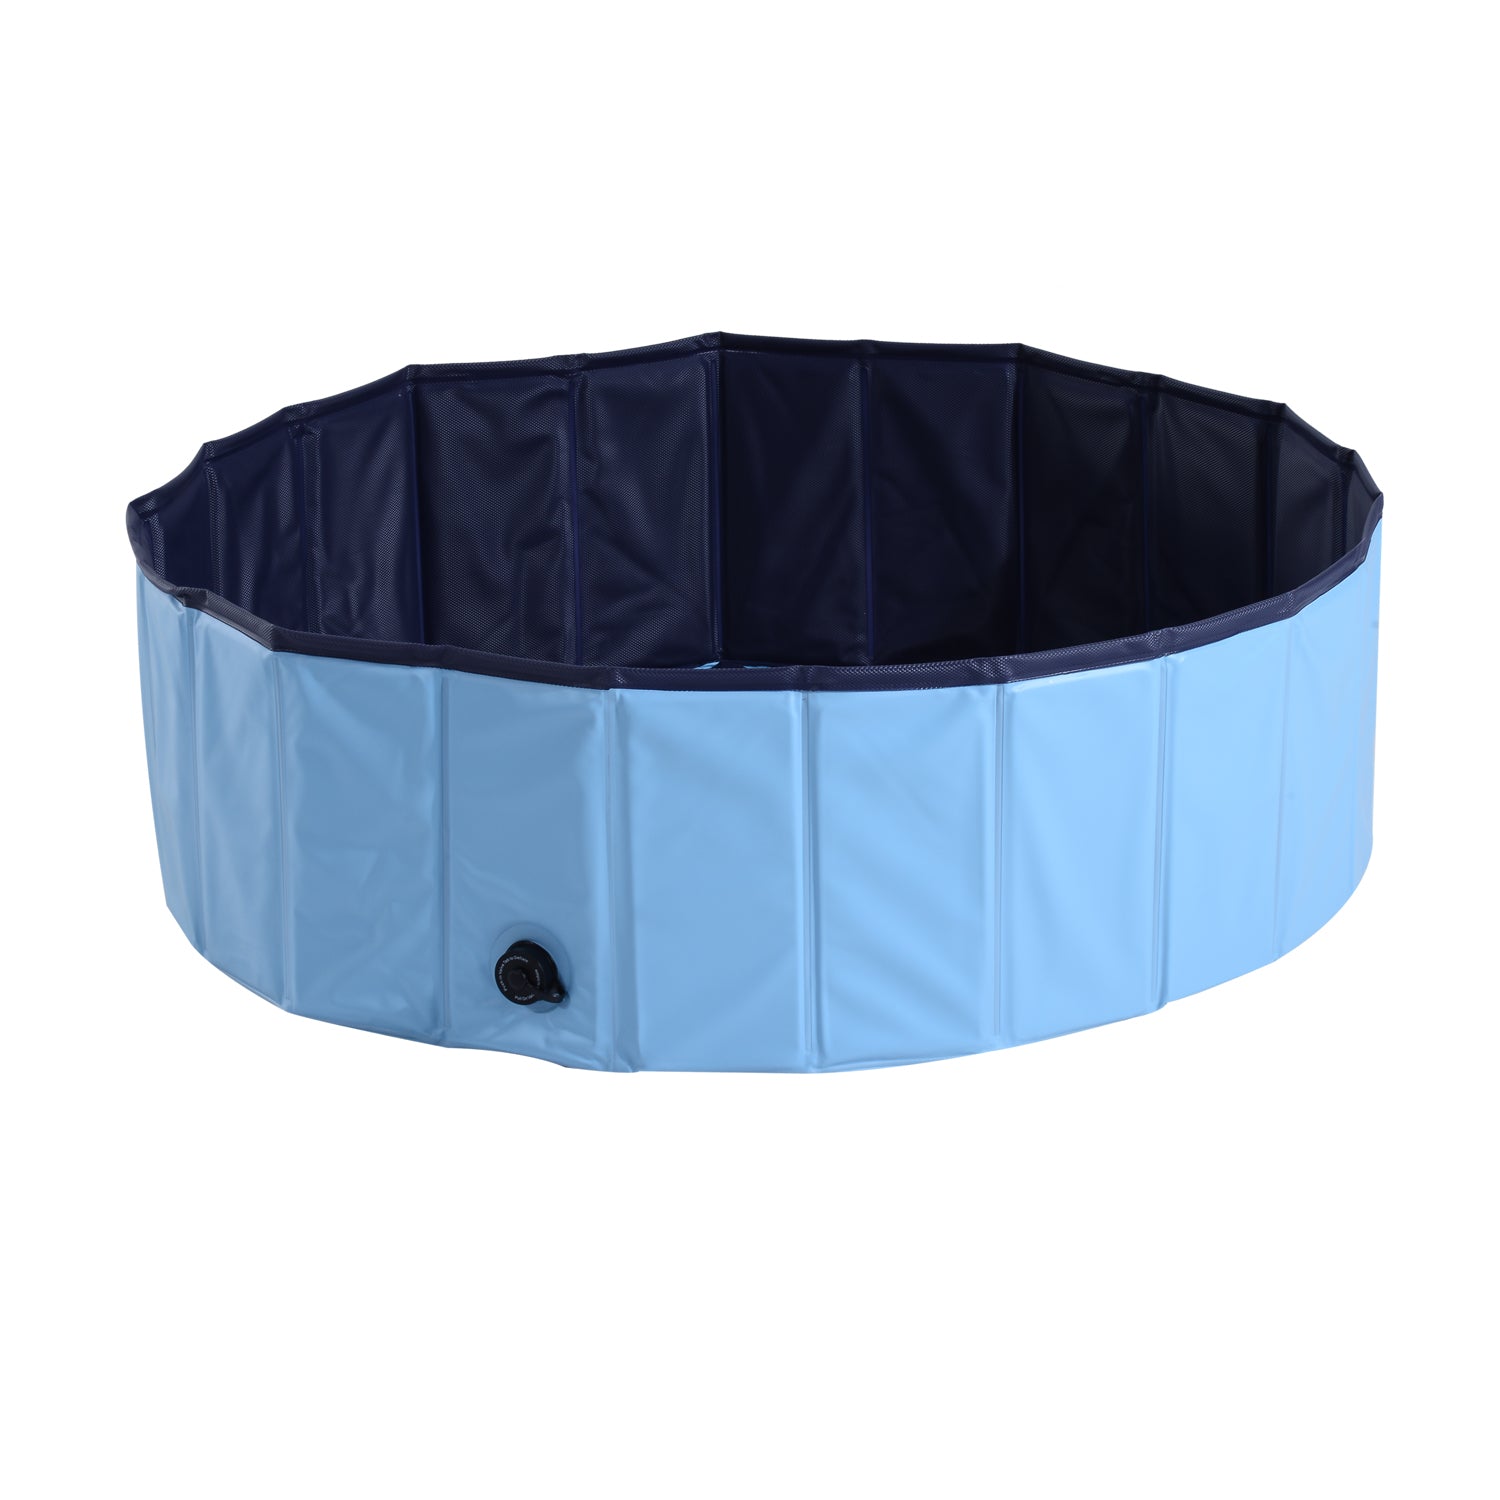 Φ100x30H cm Pet Swimming Pool-Blue